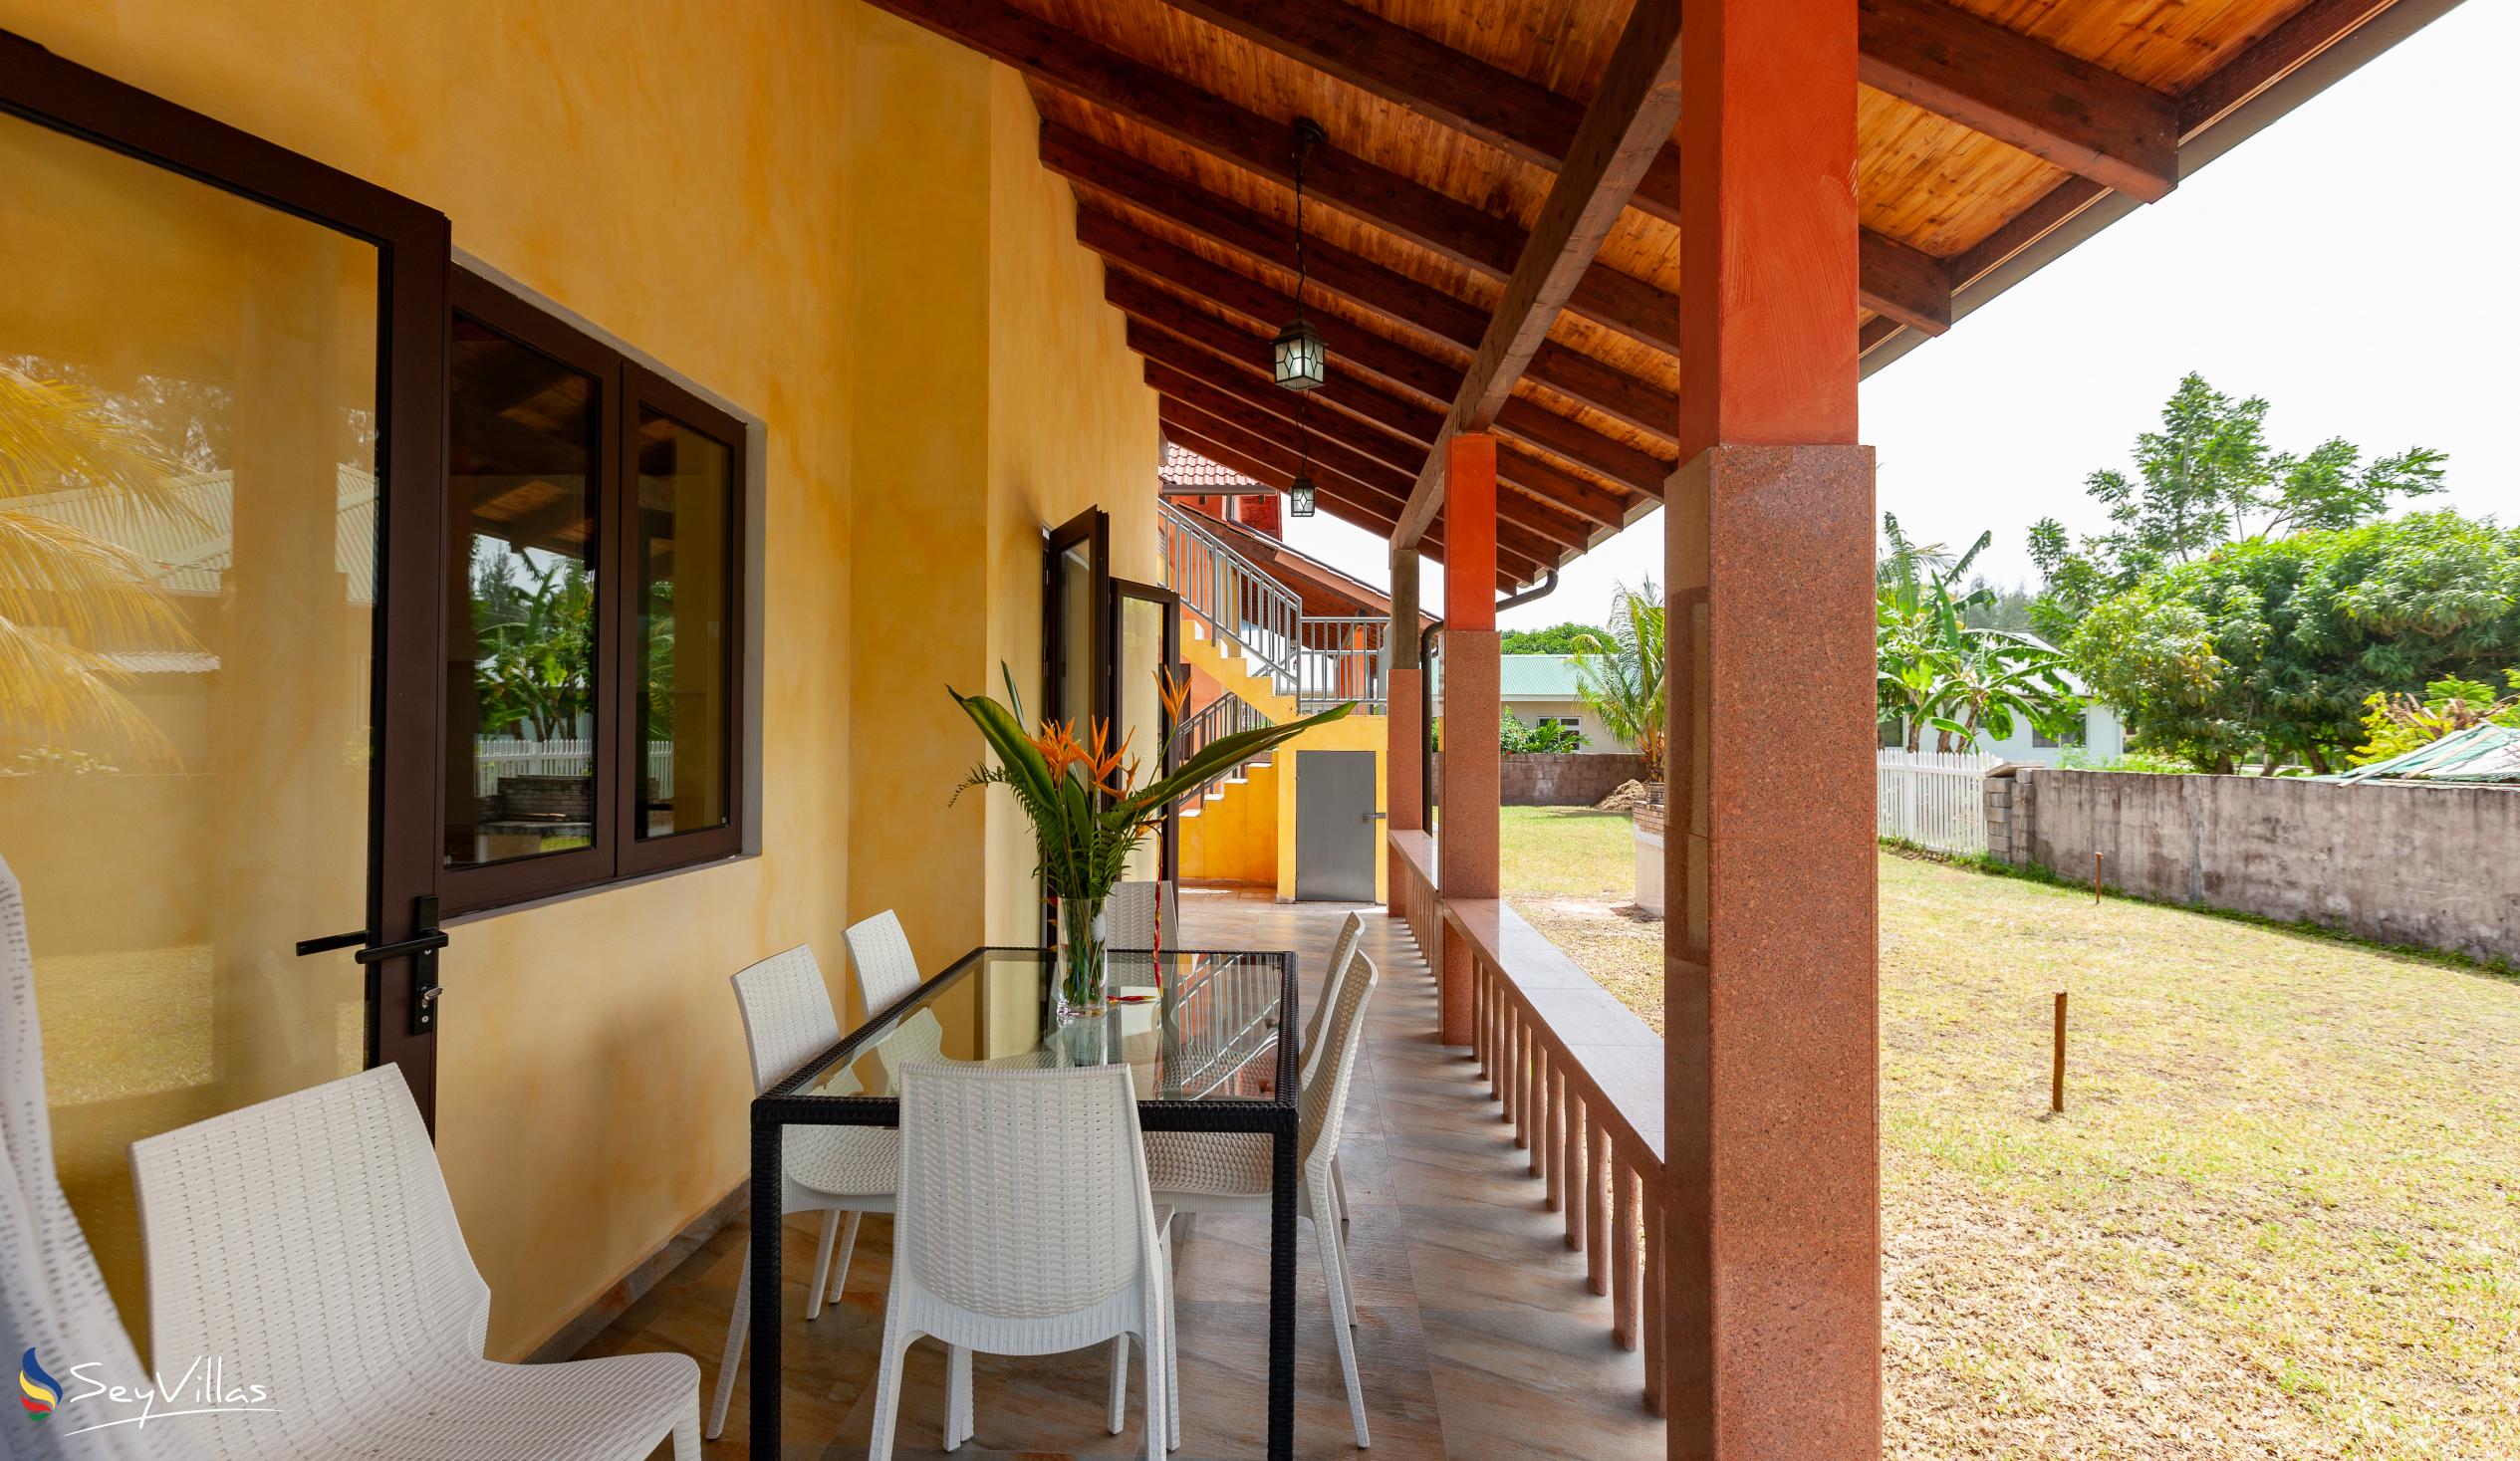 Foto 16: Villa Sole - Esterno - Praslin (Seychelles)